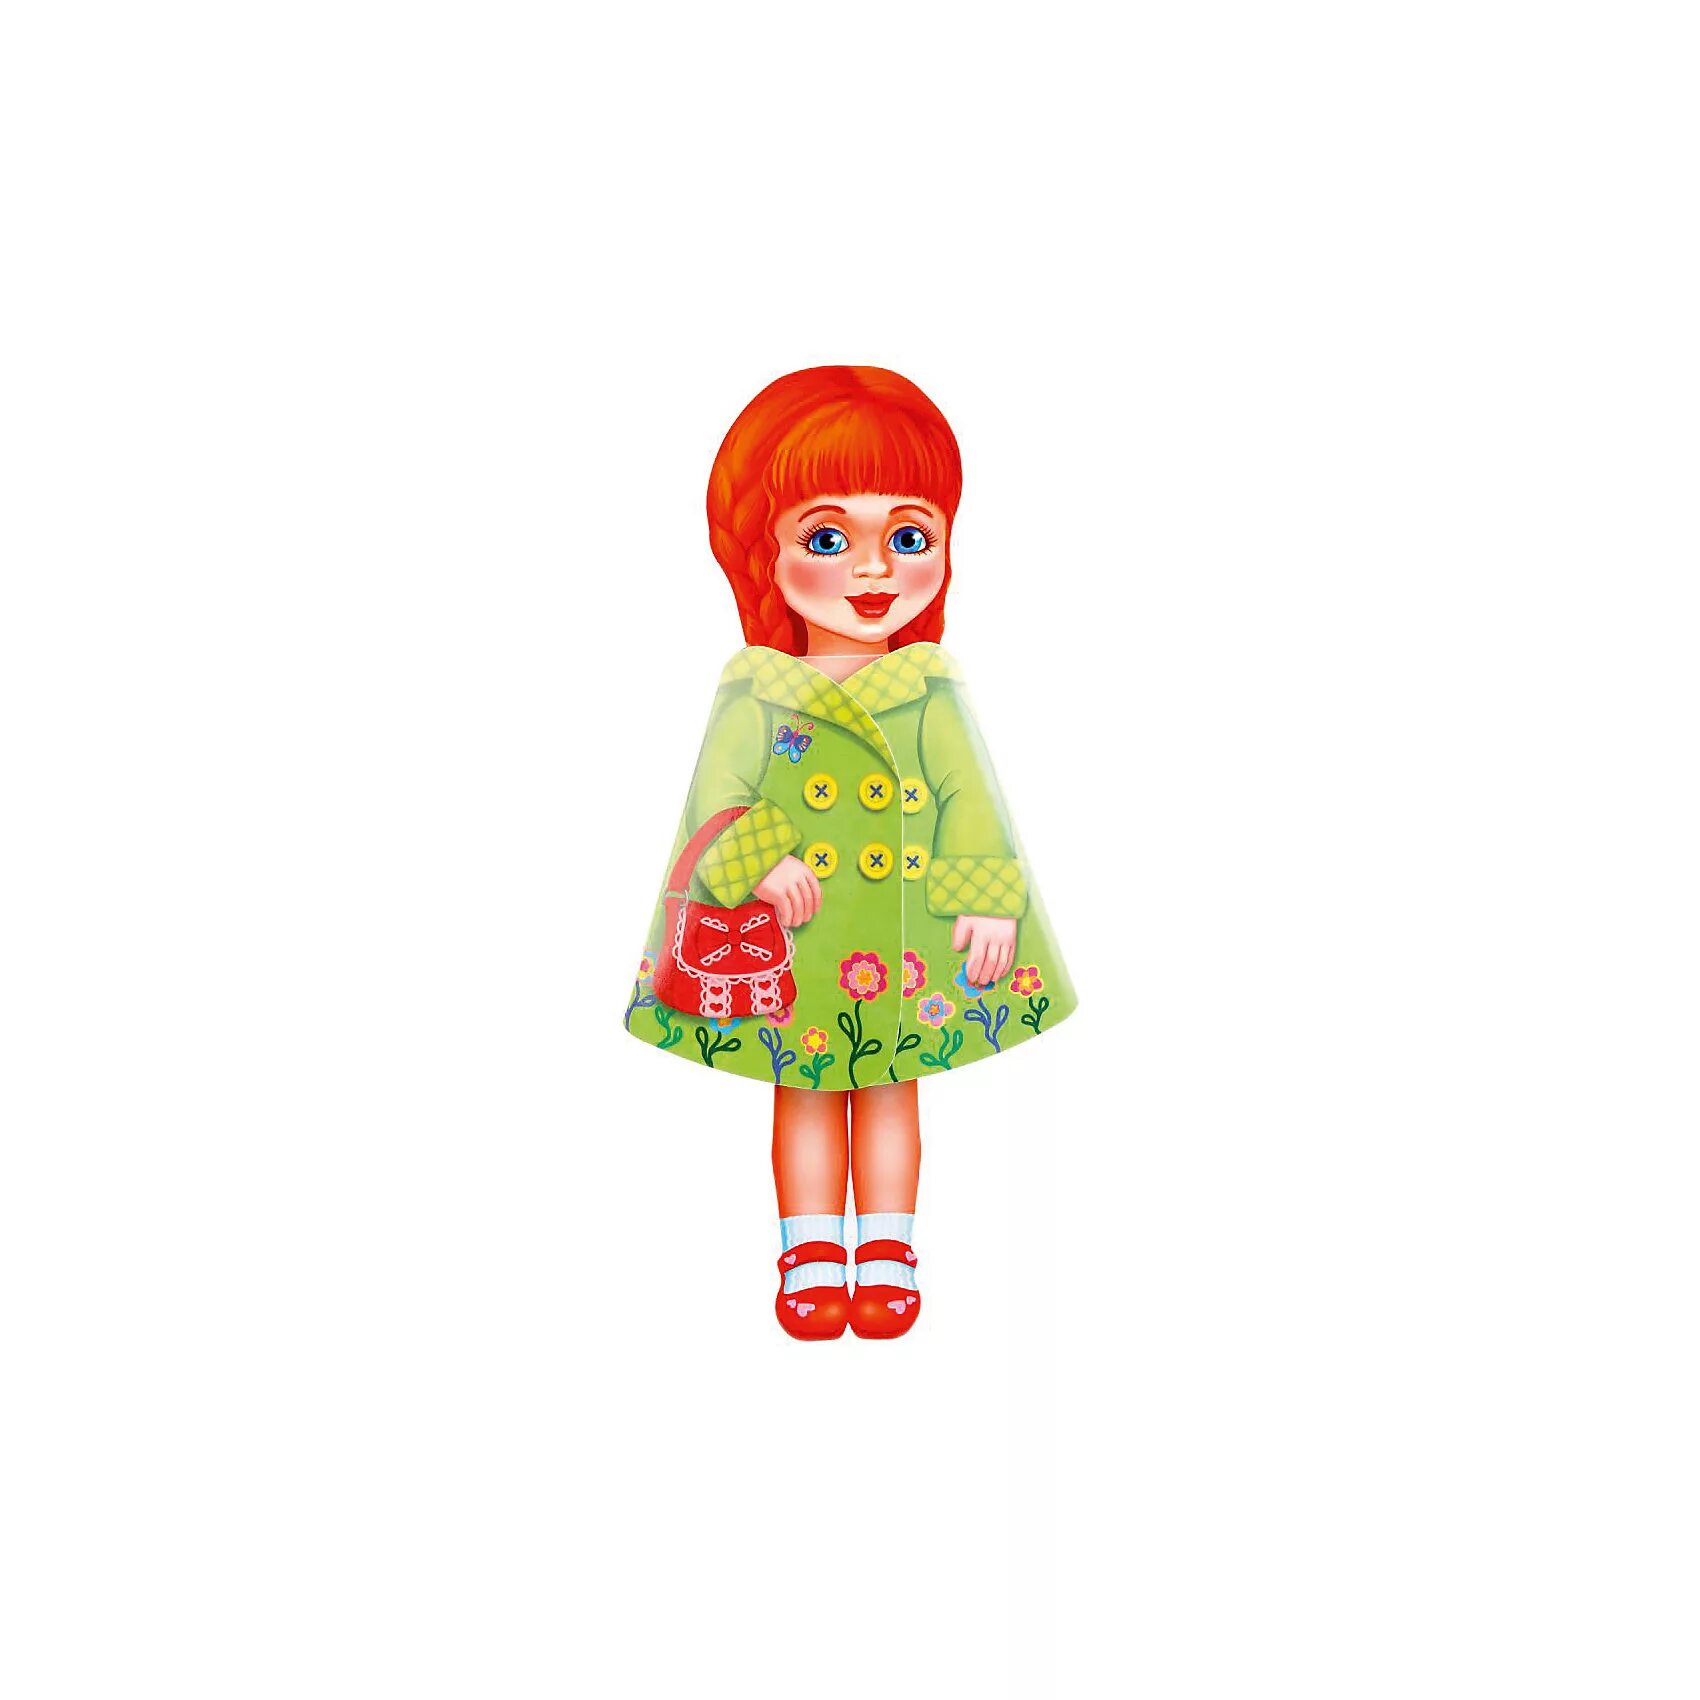 Кукла Катя. Моя любимая игрушка кукла. Кукла Катя для детей. Кукла Катя Россия.